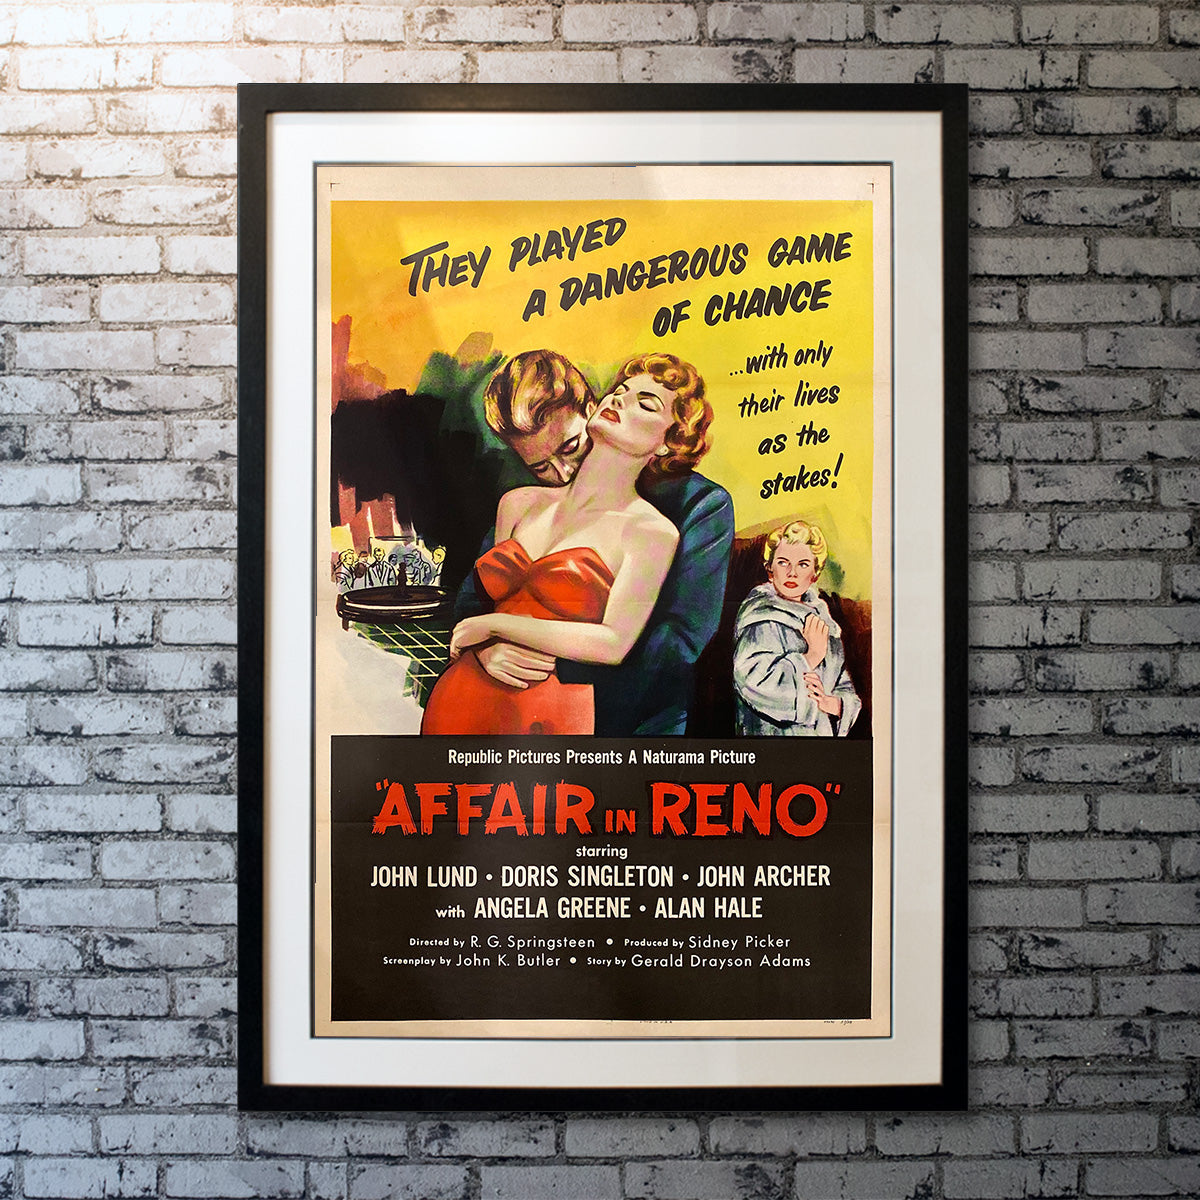 Original Movie Poster of Affair In Reno (1957)